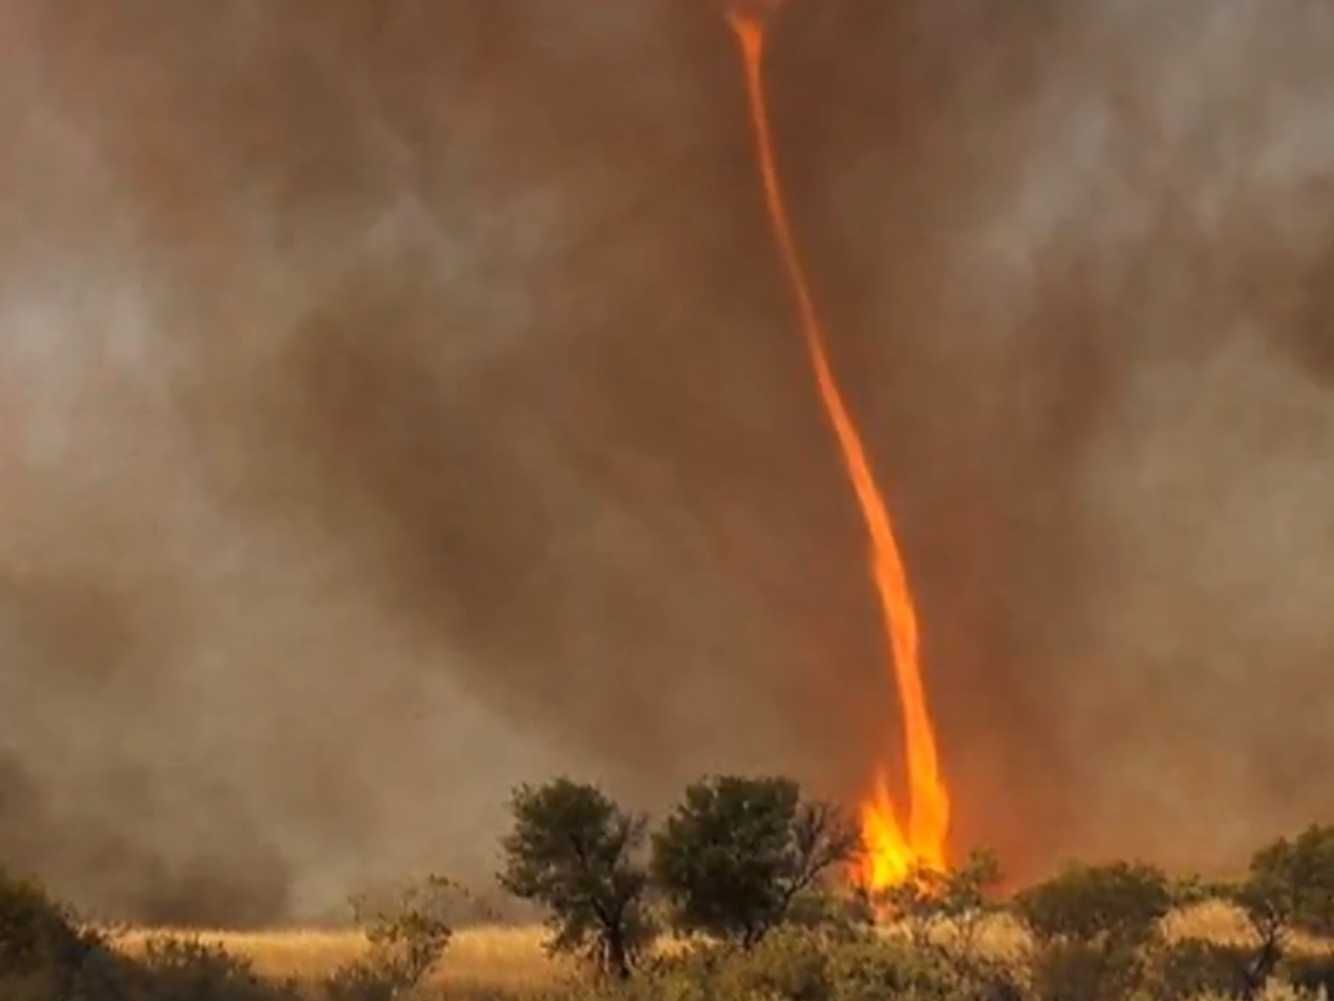 1334x1001px Fire Tornado in Nature | #366900